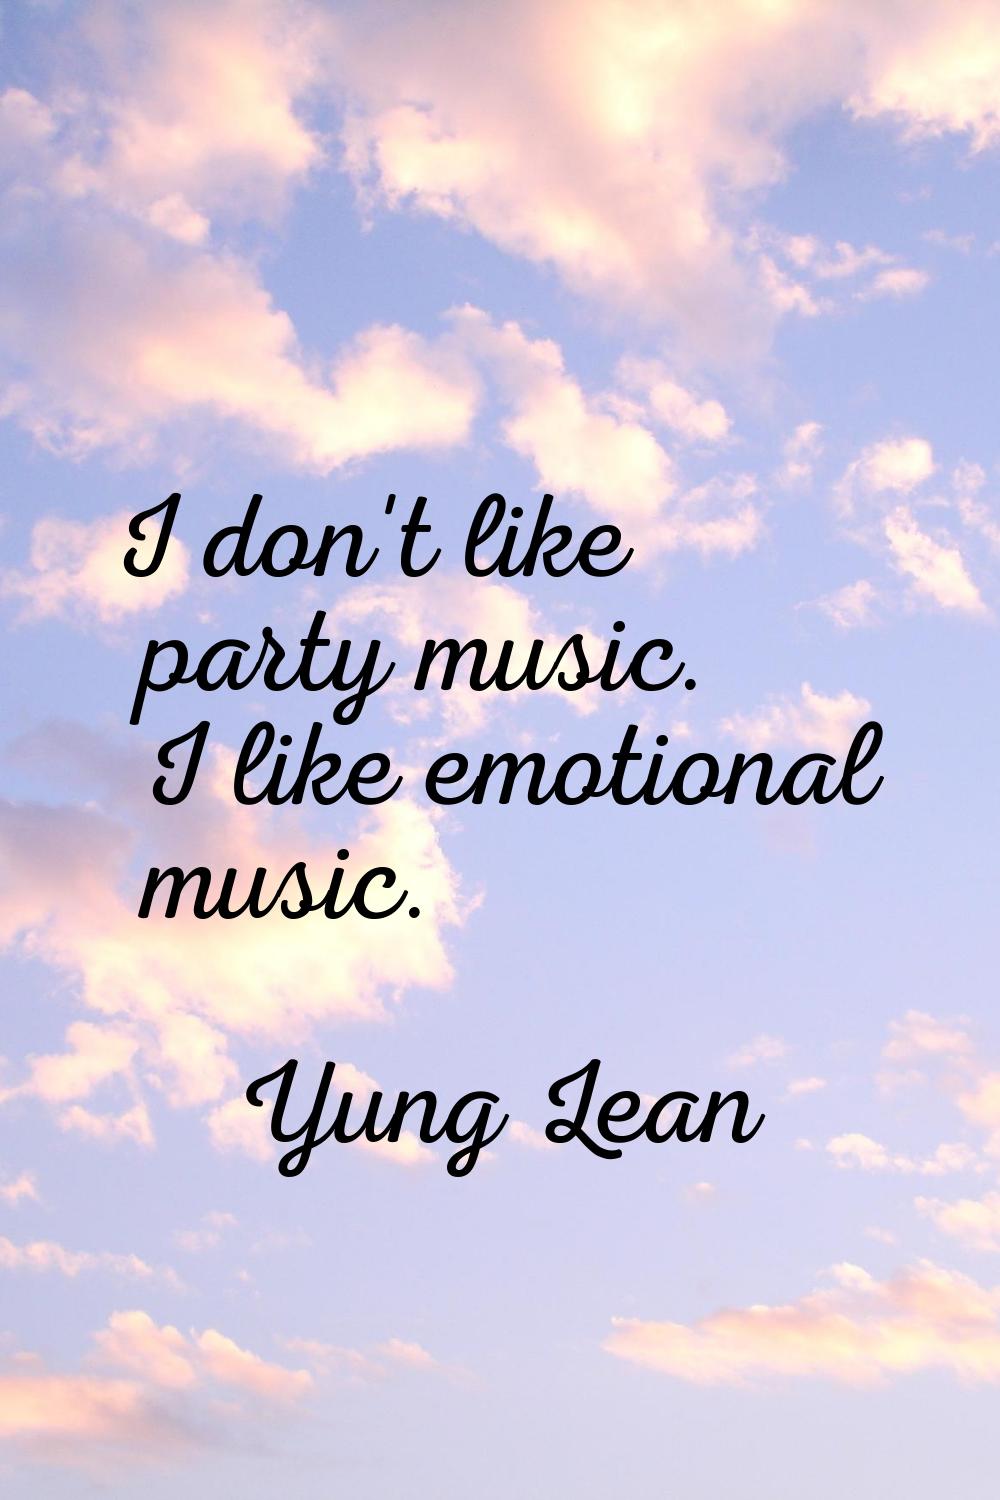 I don't like party music. I like emotional music.